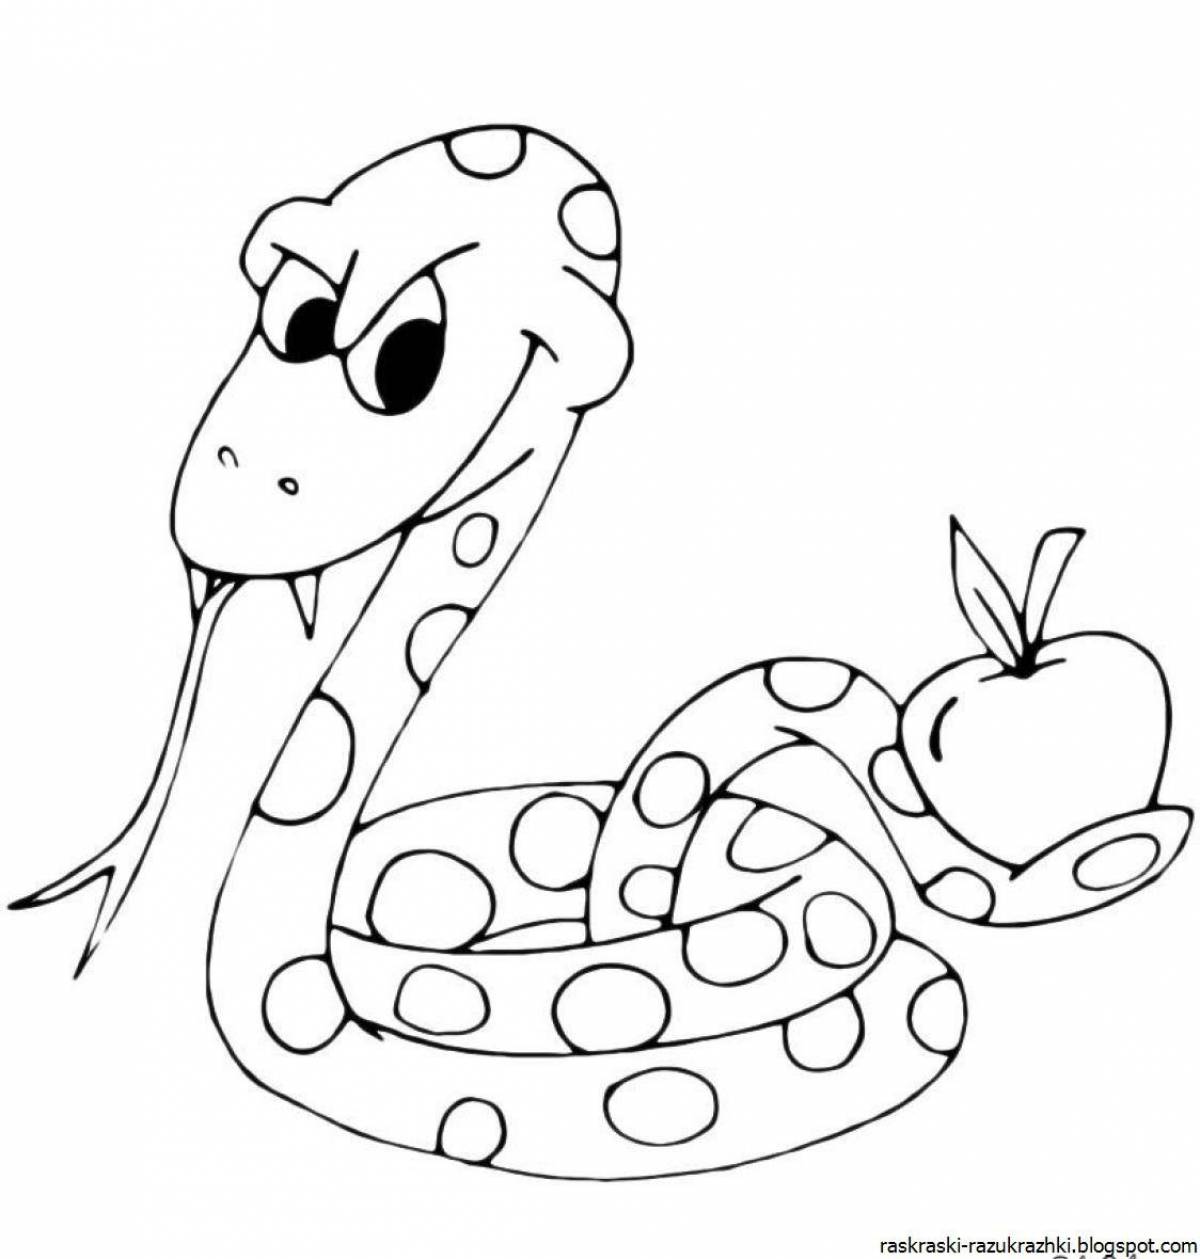 Веселая раскраска змея для детей